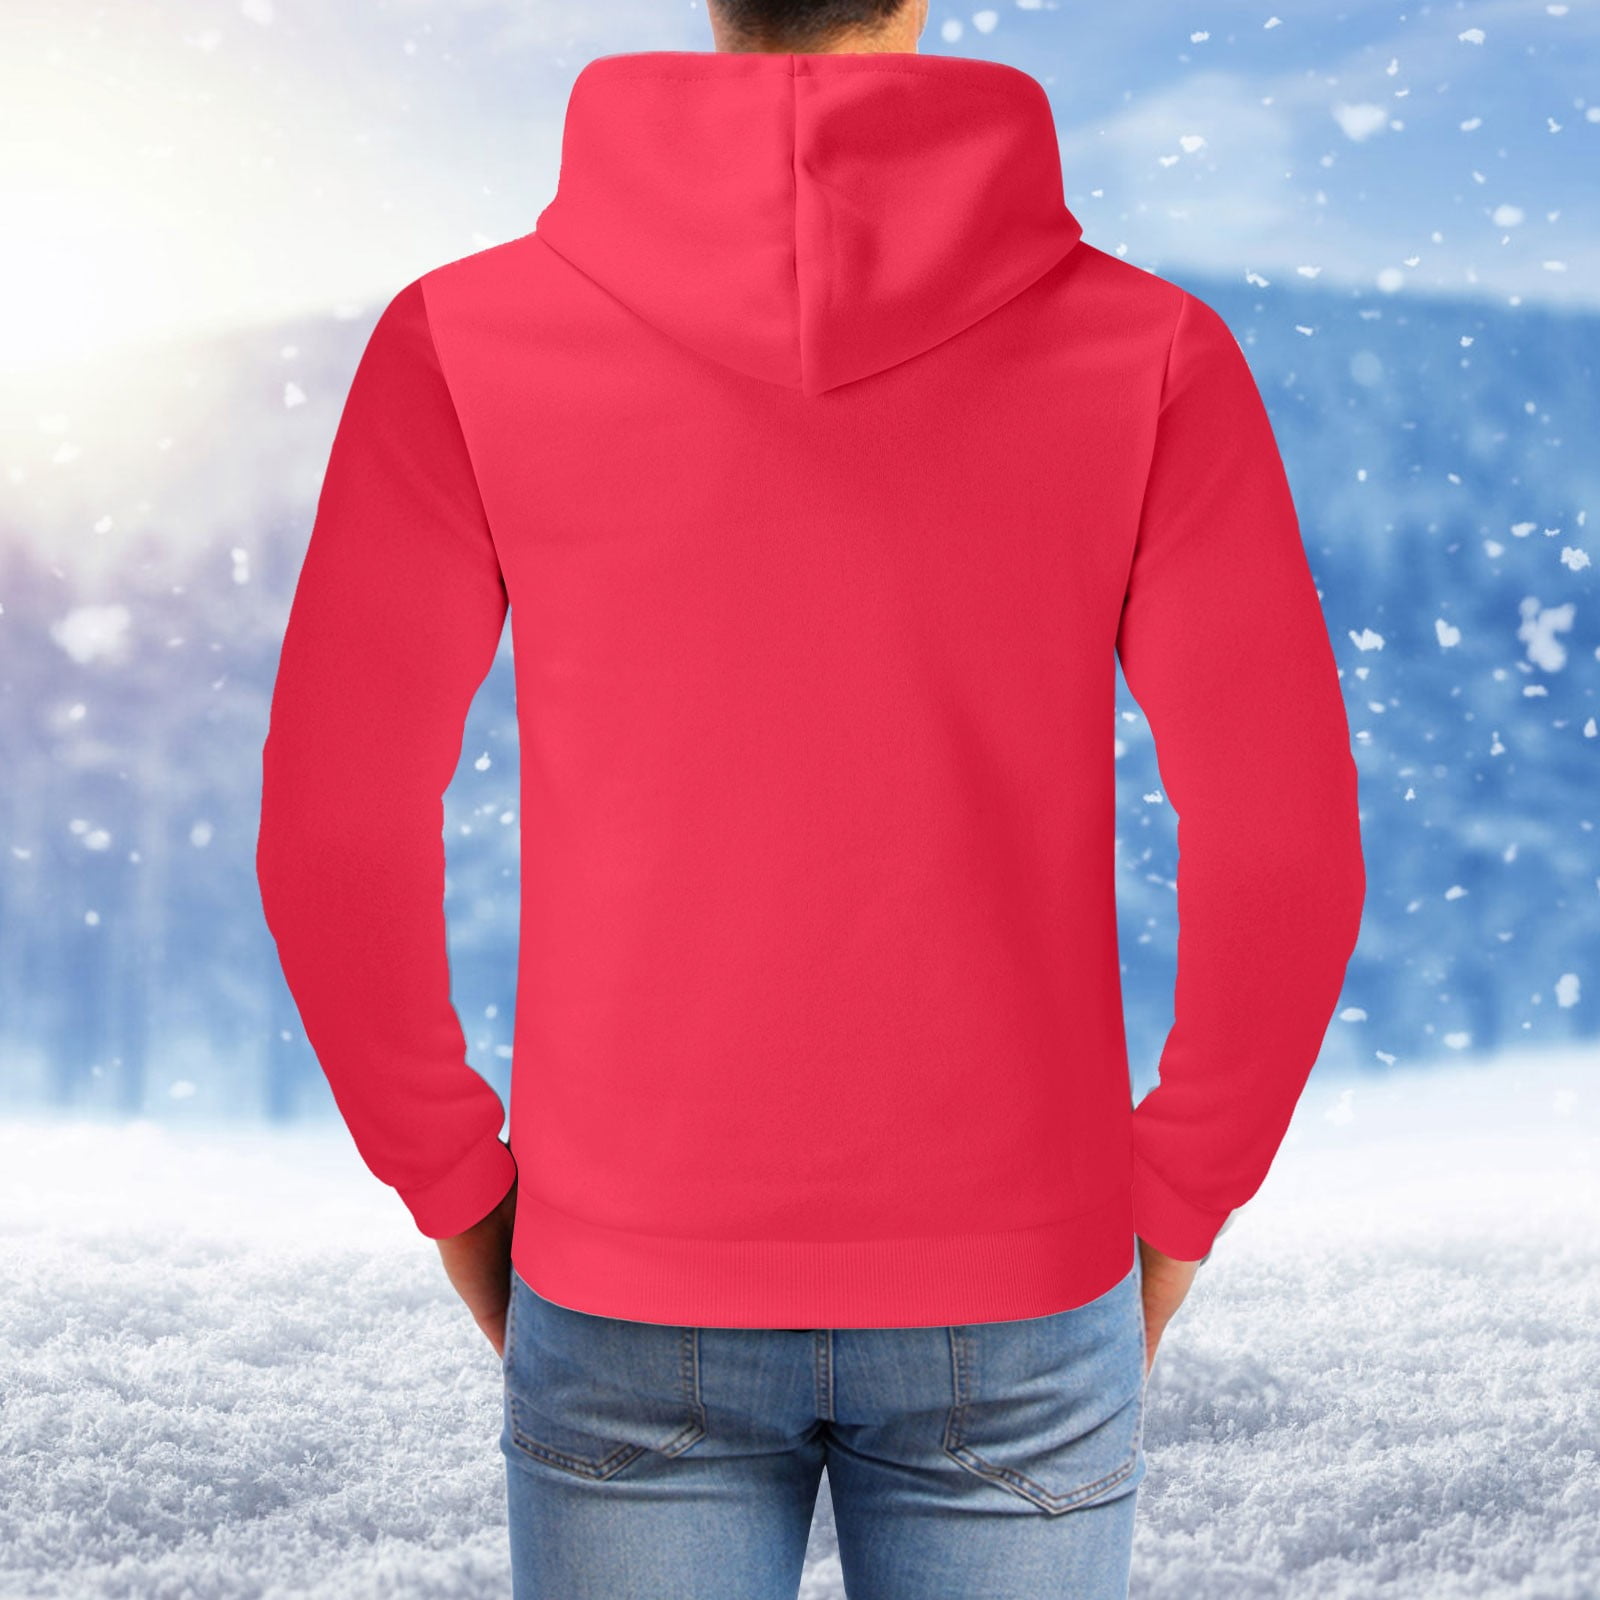 LEEy-world Hoodies For Men Full Zip Men's Zip Up Hoodie Heavyweight Lined  Jacket Wool Warm Thick Winter Coat Sweatshirt Red,XXL 